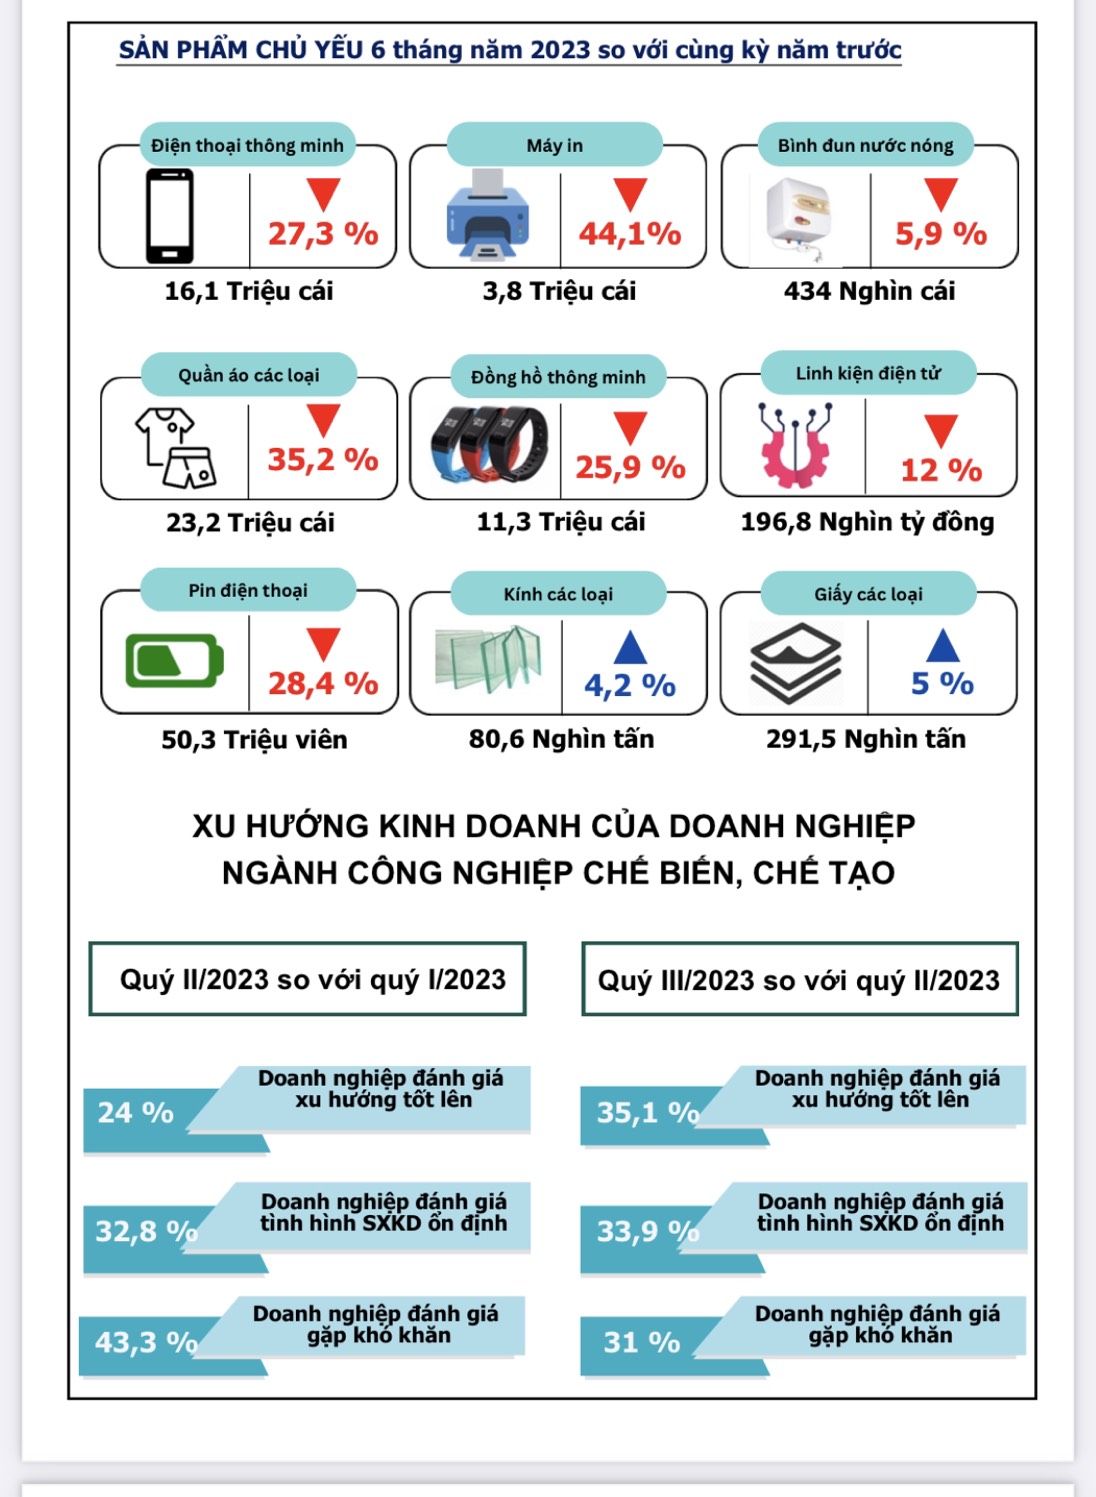 Vì sao tỉnh Bắc Ninh đứng &quot;đội sổ&quot; về trăng trưởng GRDP 6 tháng đầu năm: Đến nông nghiệp cũng âm 6,83% - Ảnh 2.